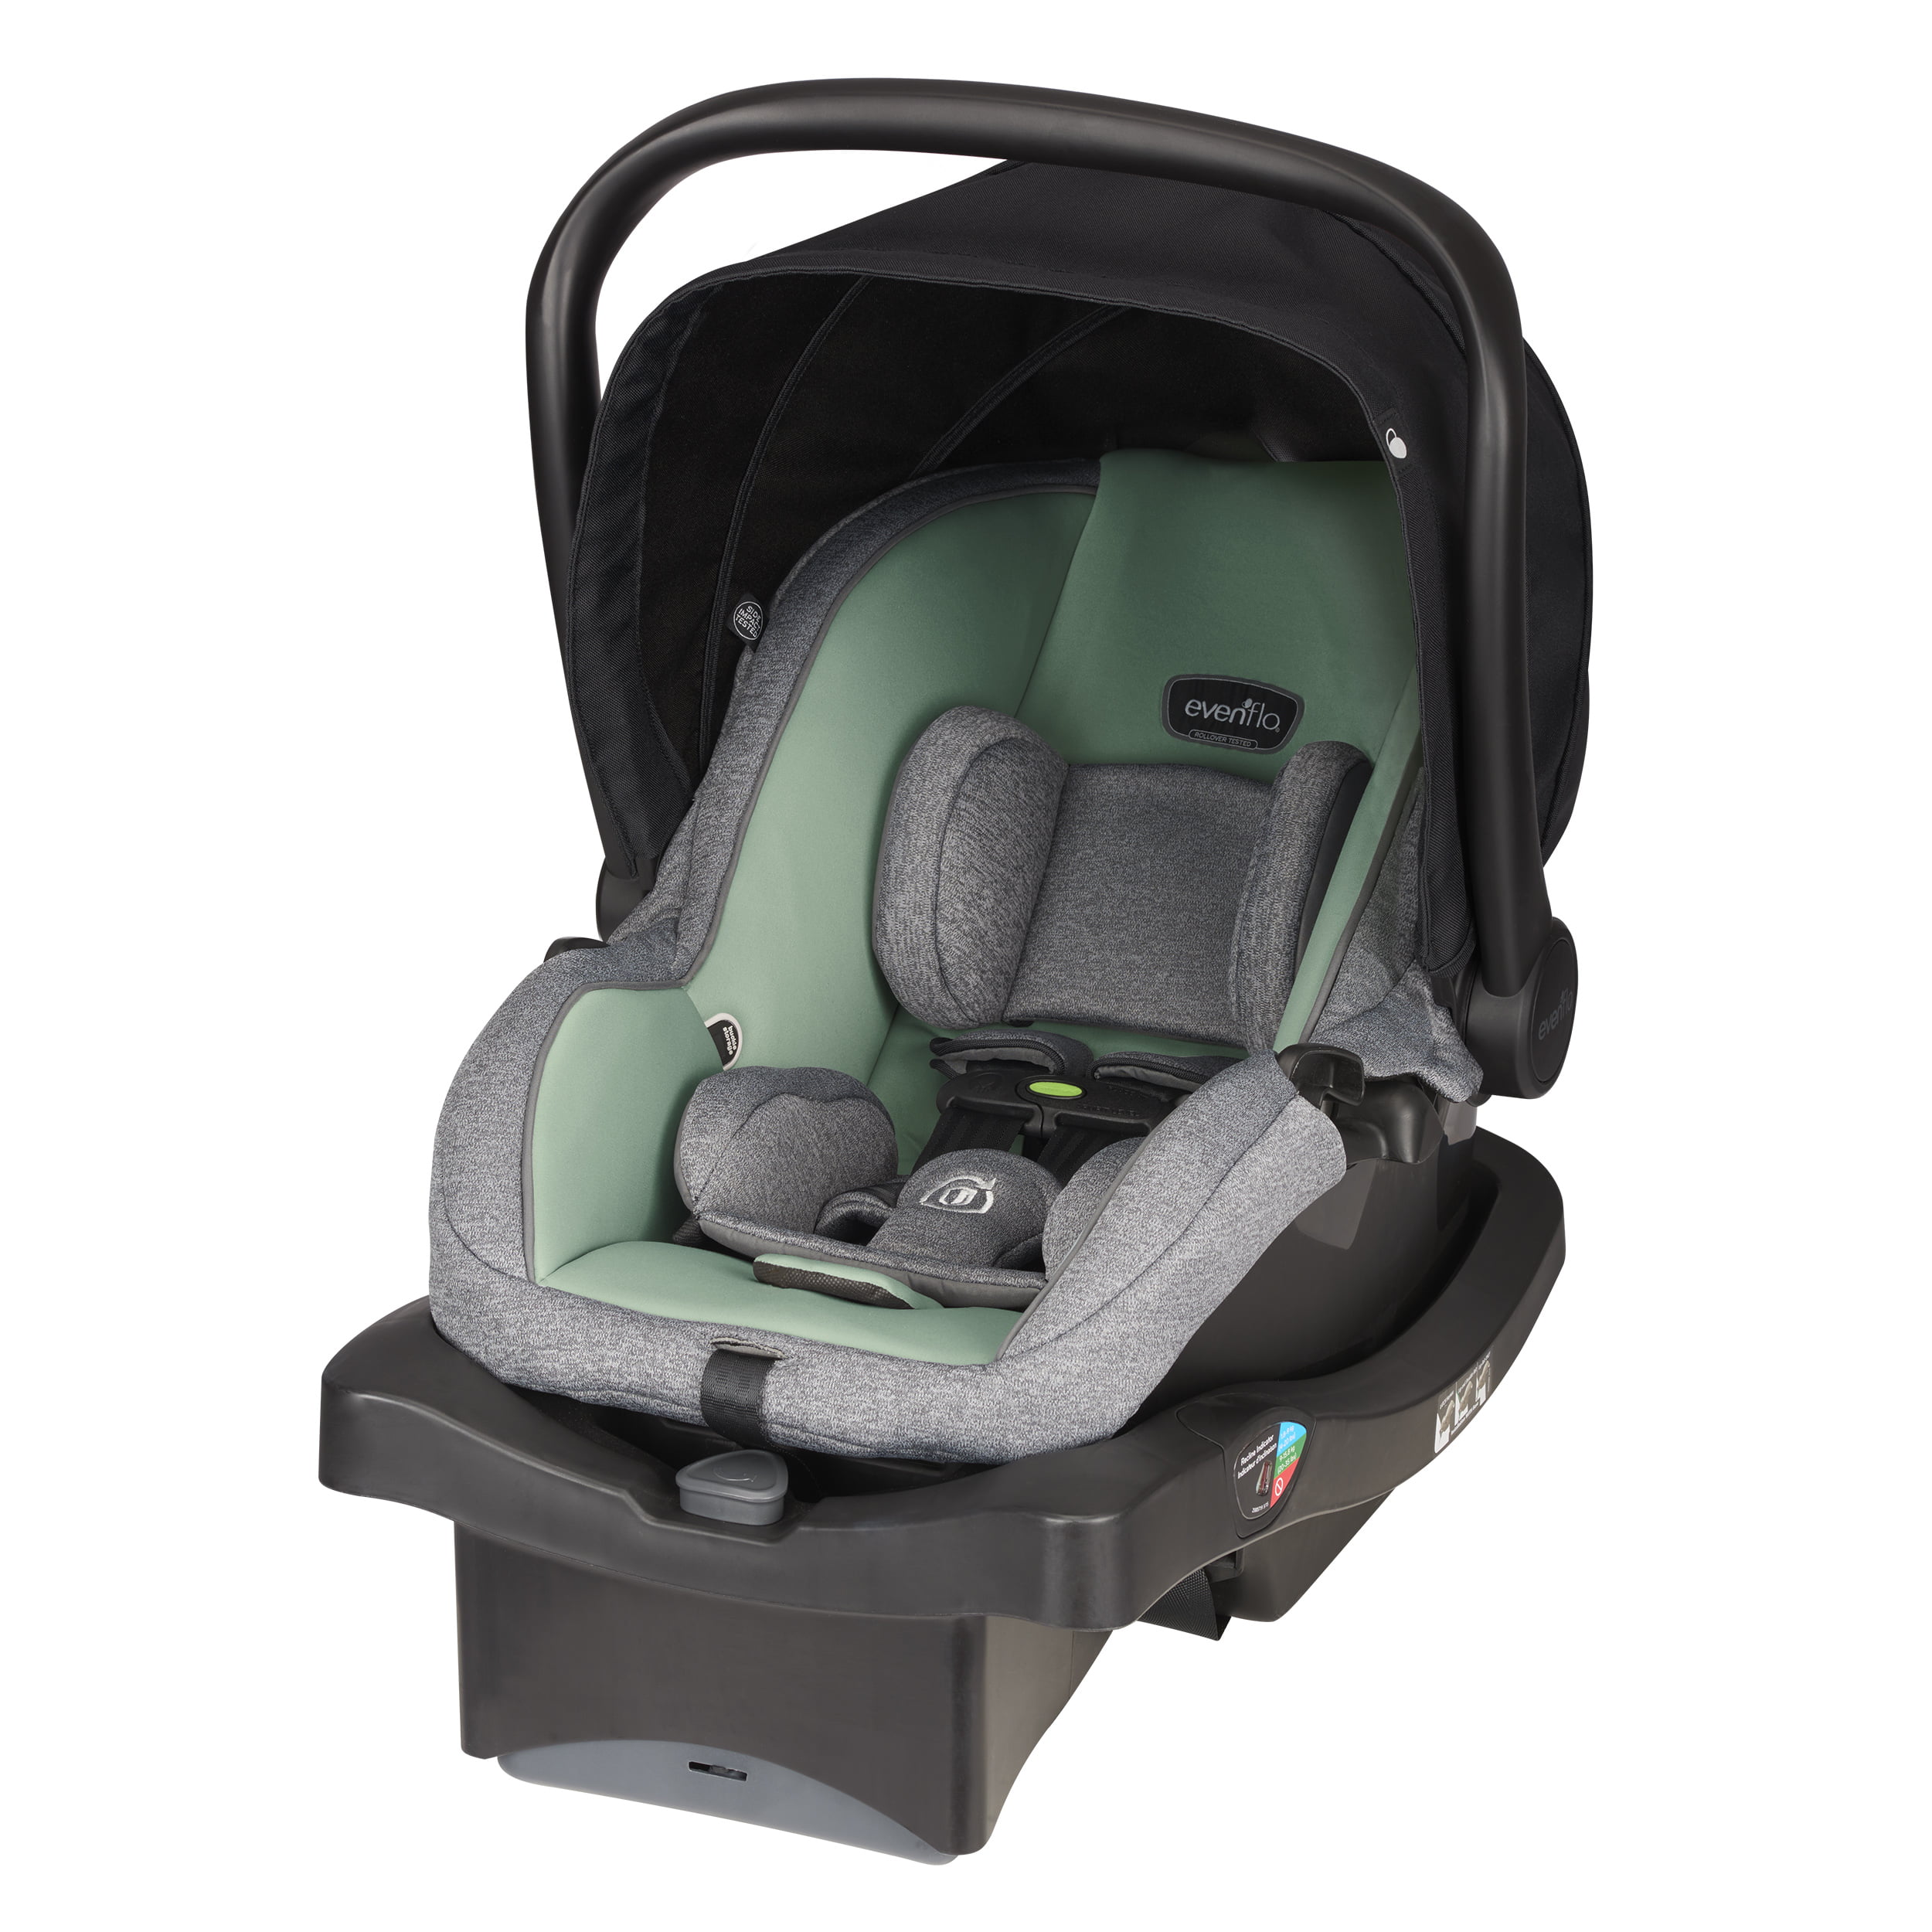 evenflo advanced sensorsafe litemax infant car seat stroller